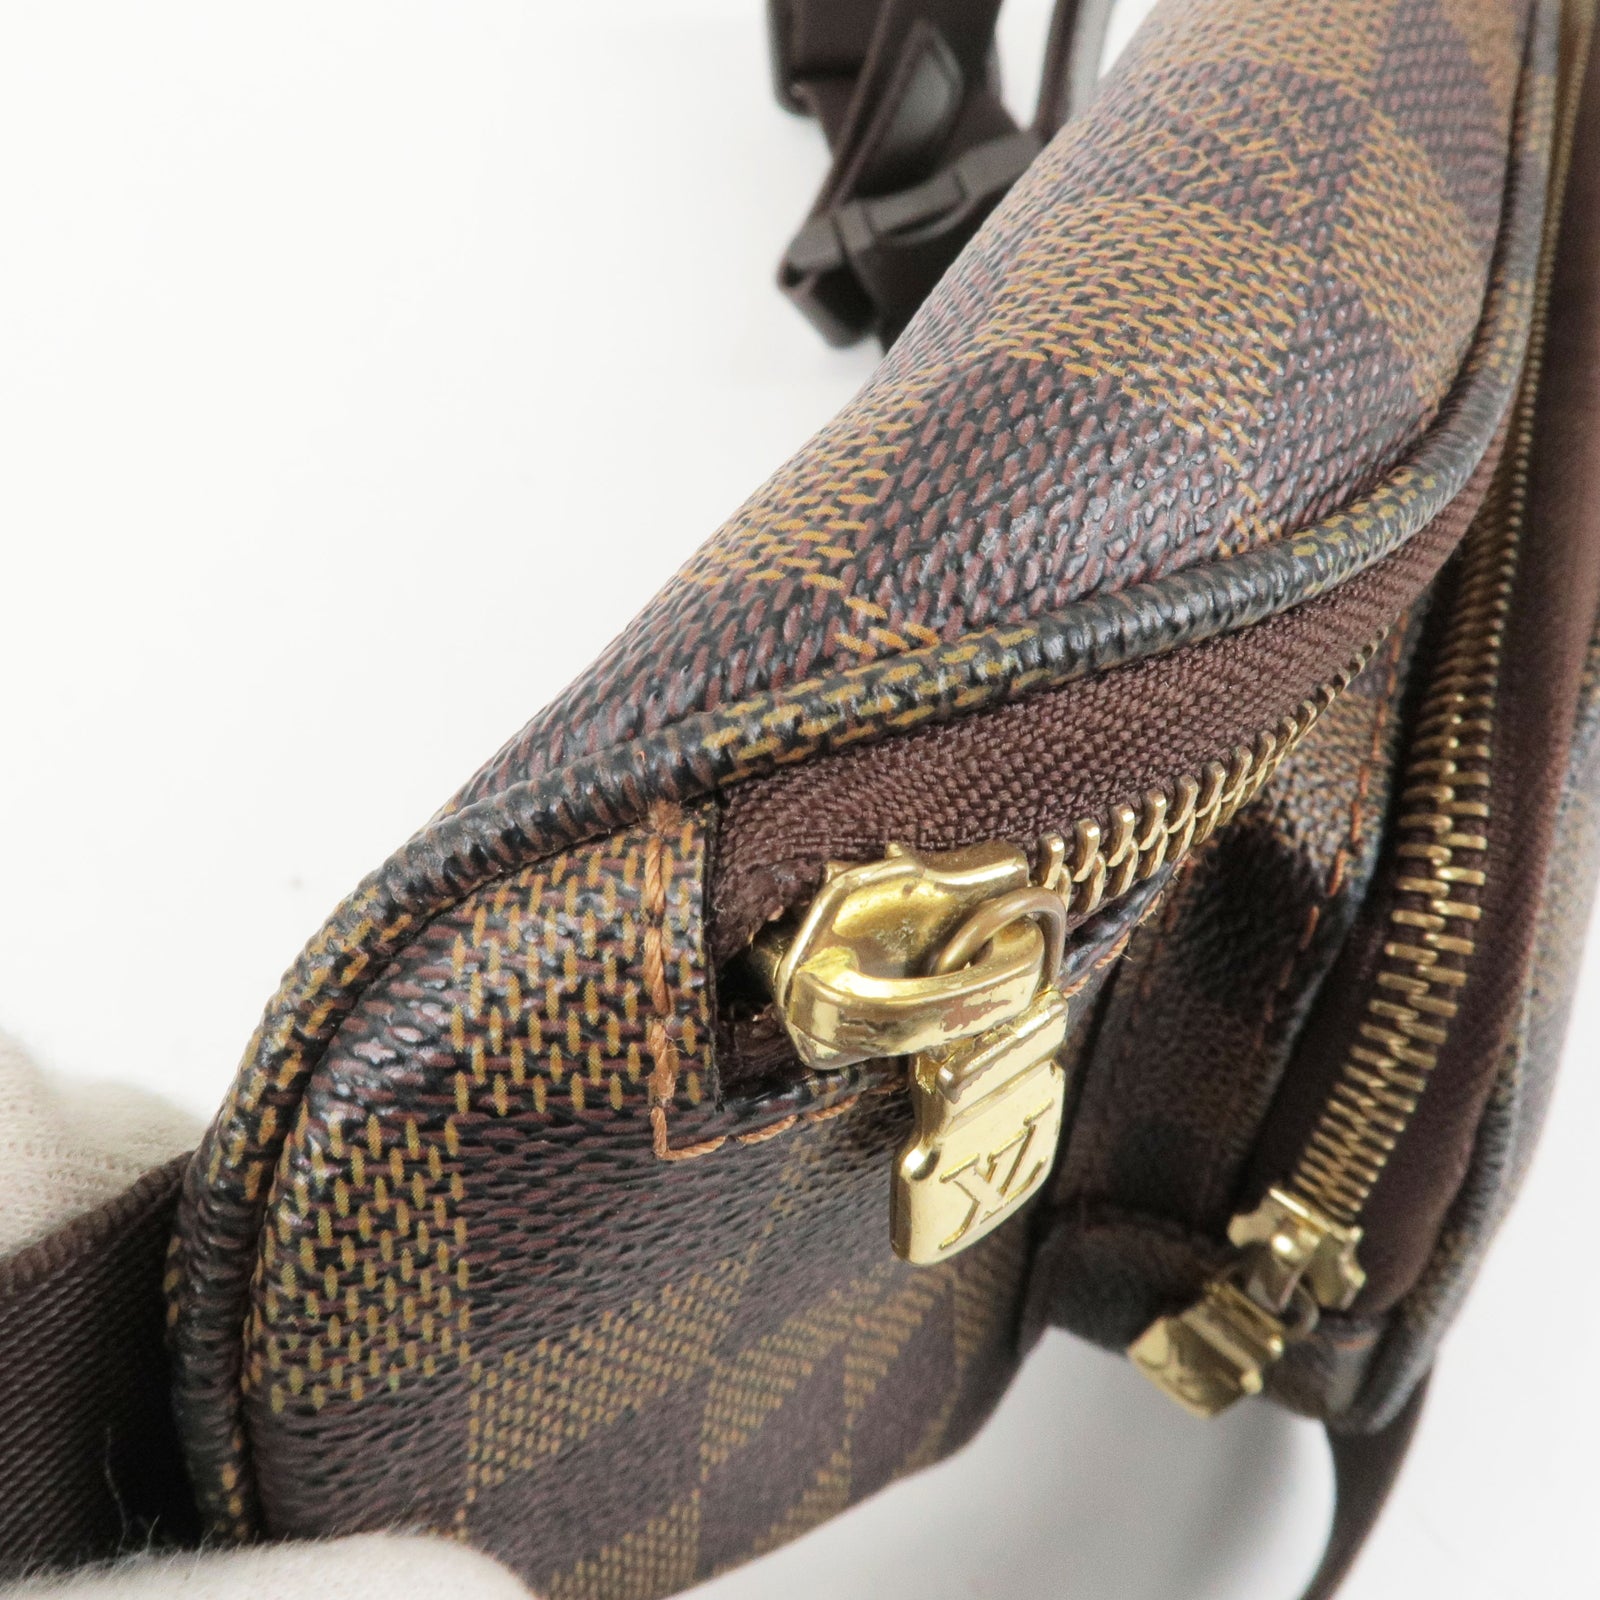 N51172 – Jurnee Smollett in Louis Vuitton - Louis - Bam - Bag